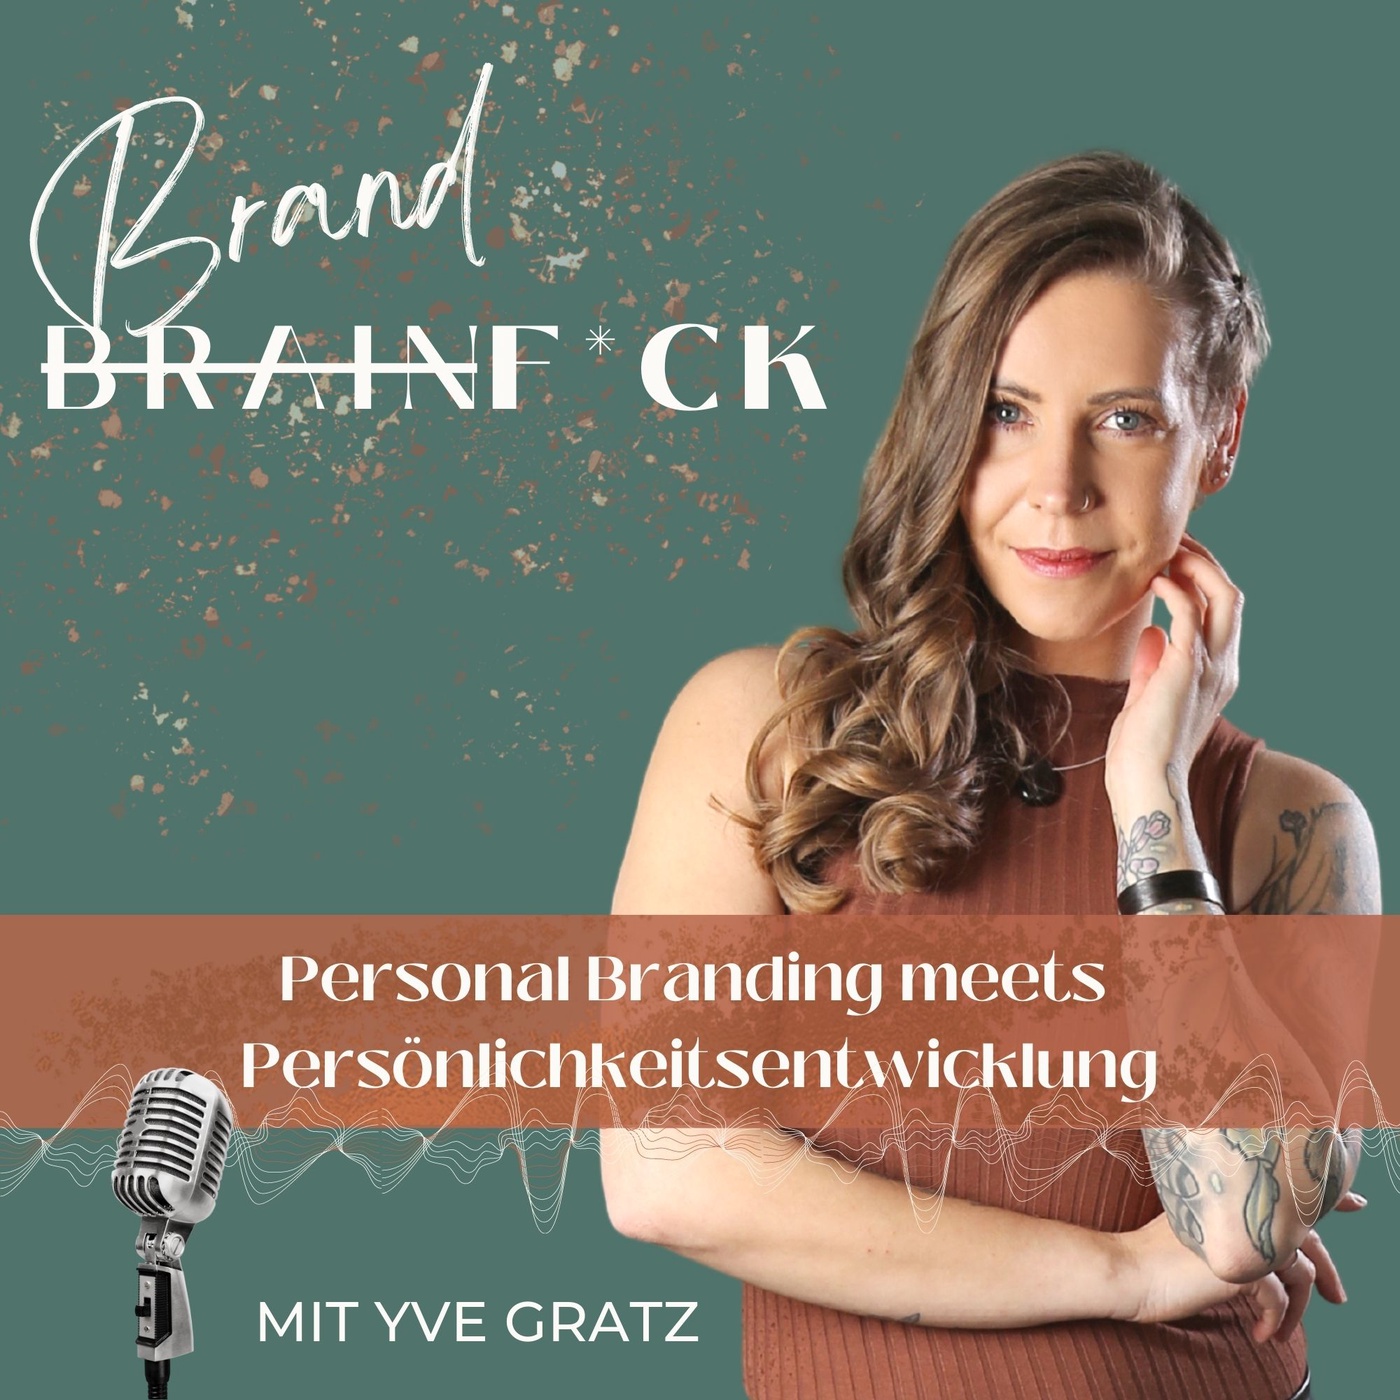 BrandF*ck - Personal Branding meets Persönlichkeitsentwicklung